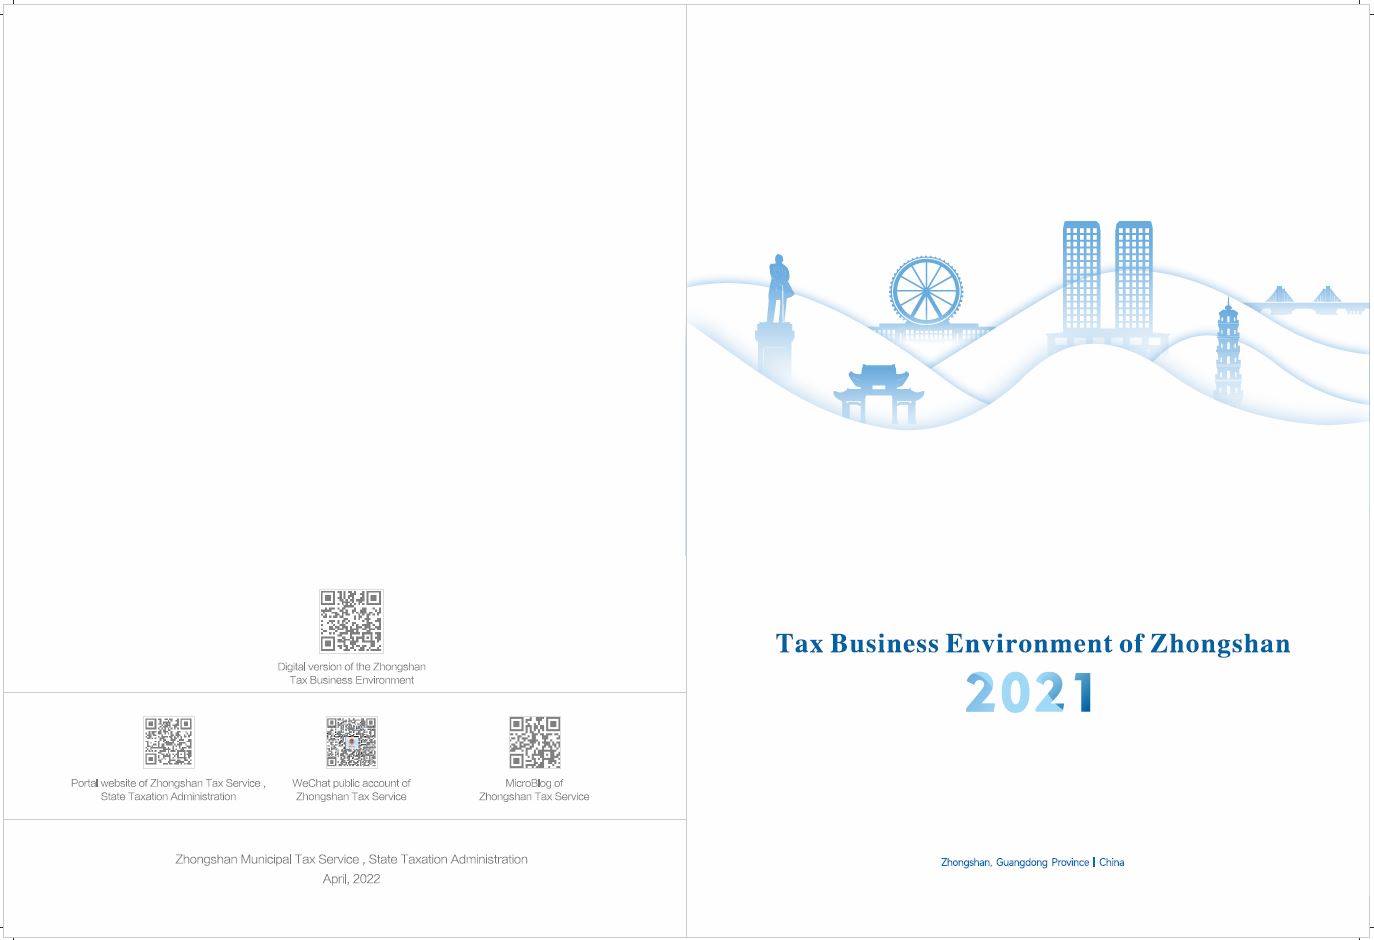 Tax Business Environment of Zhongshan 2021